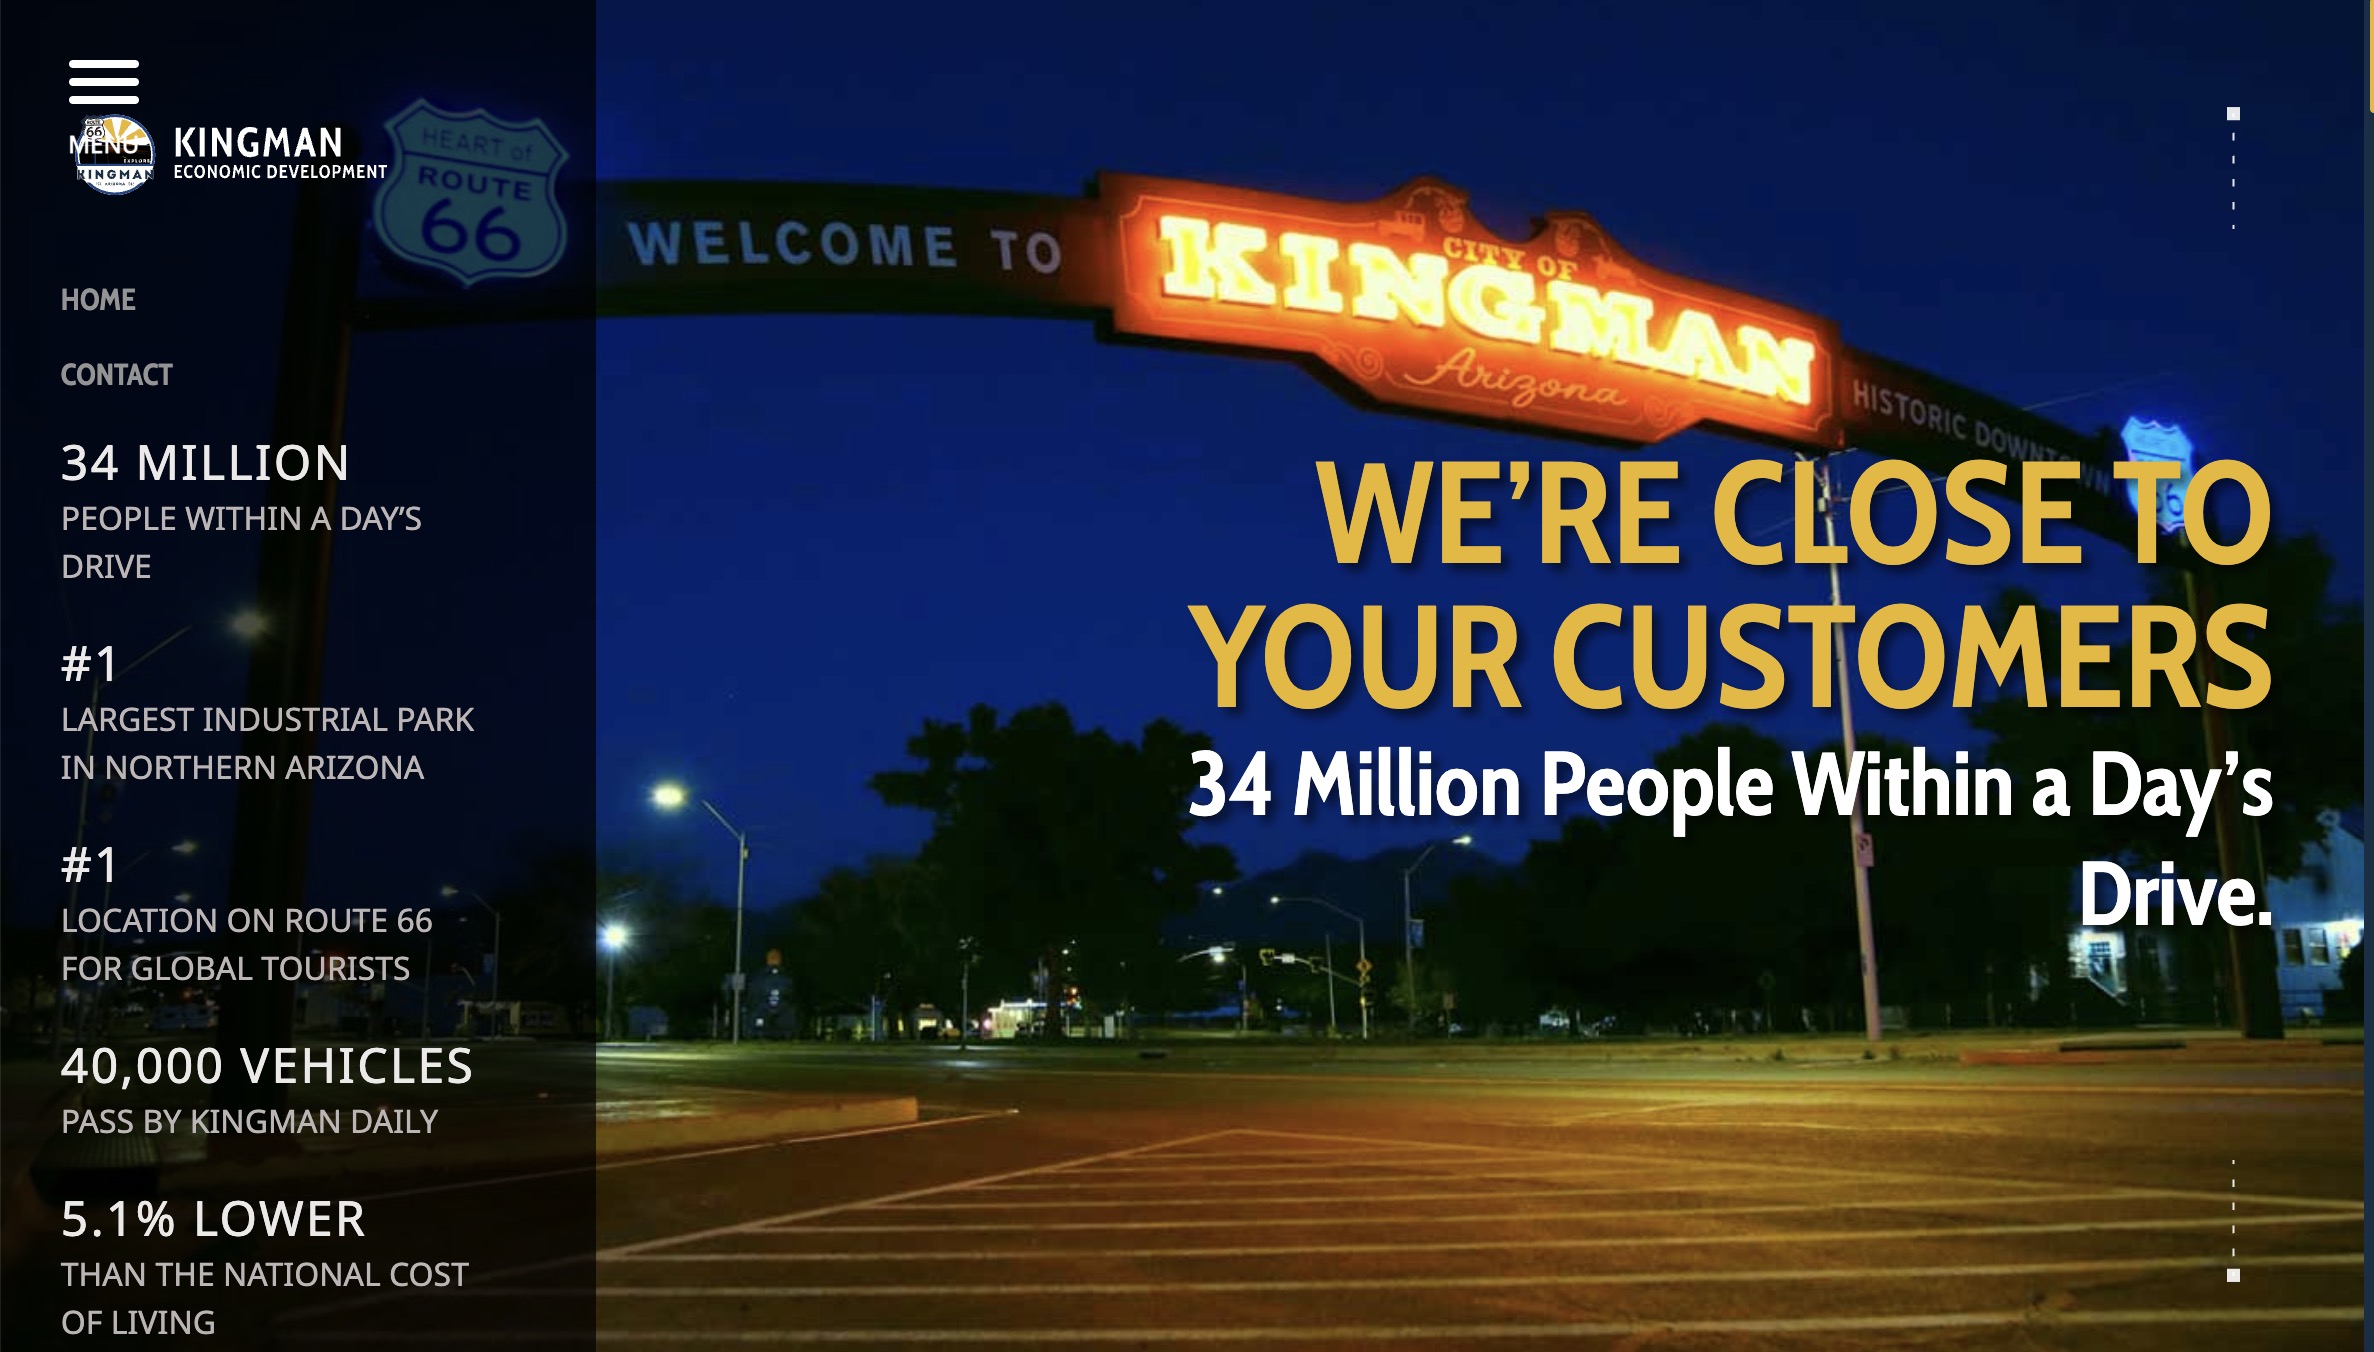 The City of Kingman, AZ Economic Development Launches Unique Community- & Business-Focused Website Photo